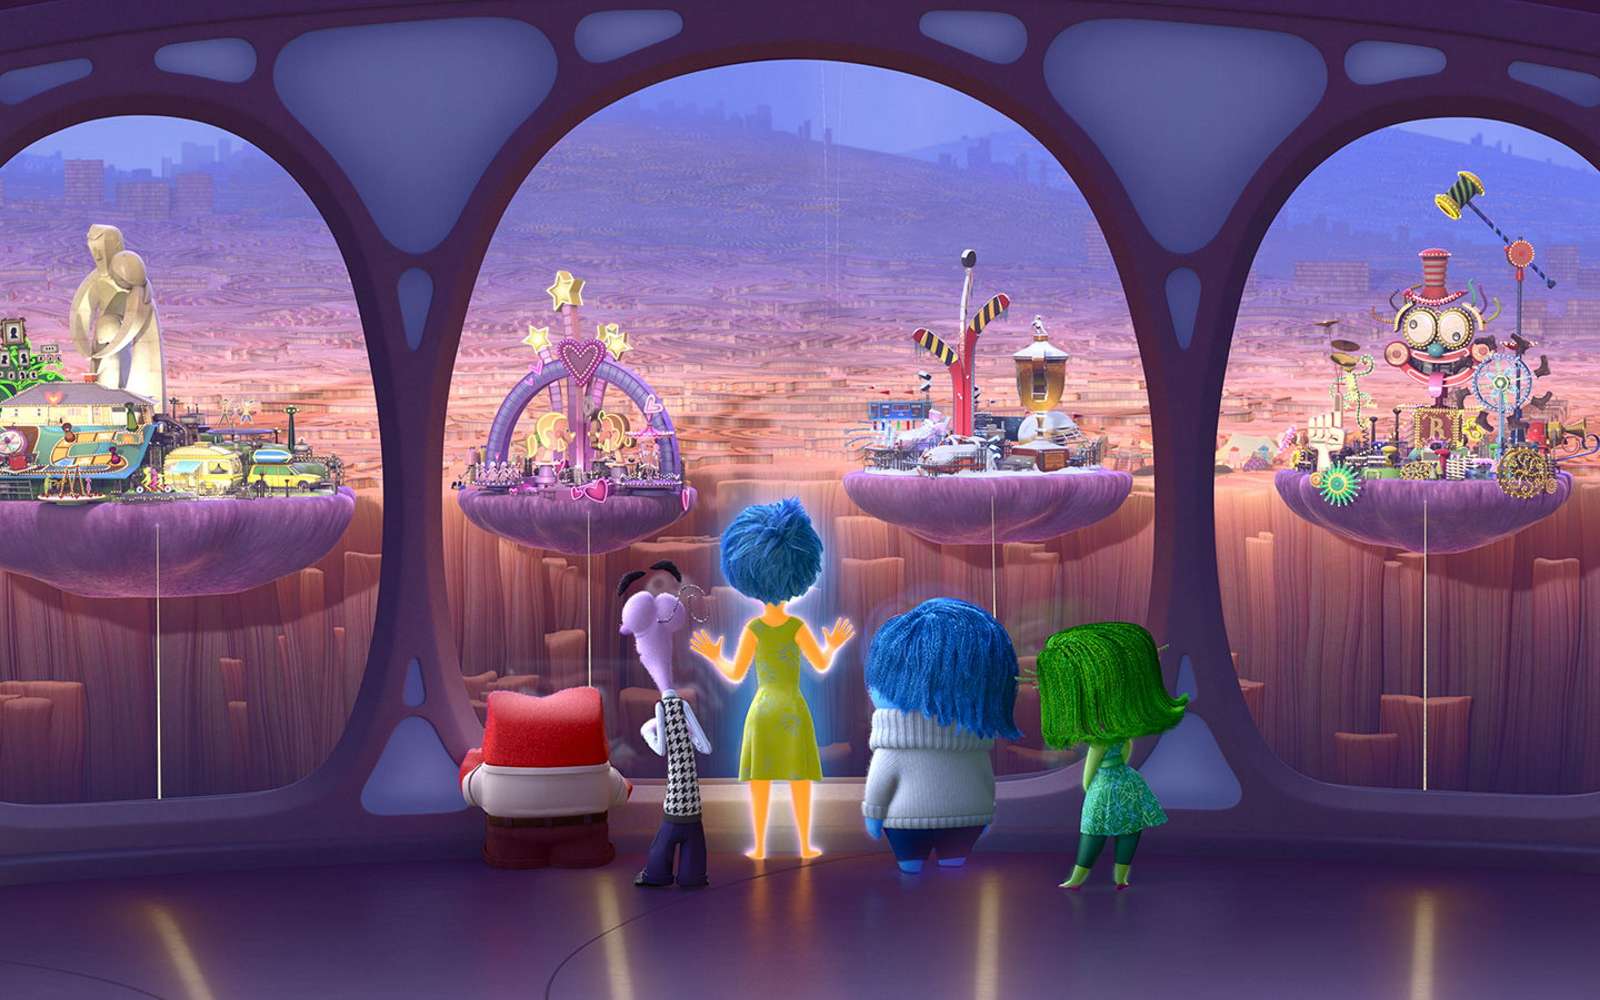 Les fondateurs des studios Pixar ont reçu le prix Turing pour leurs contributions aux CGI. © Disney